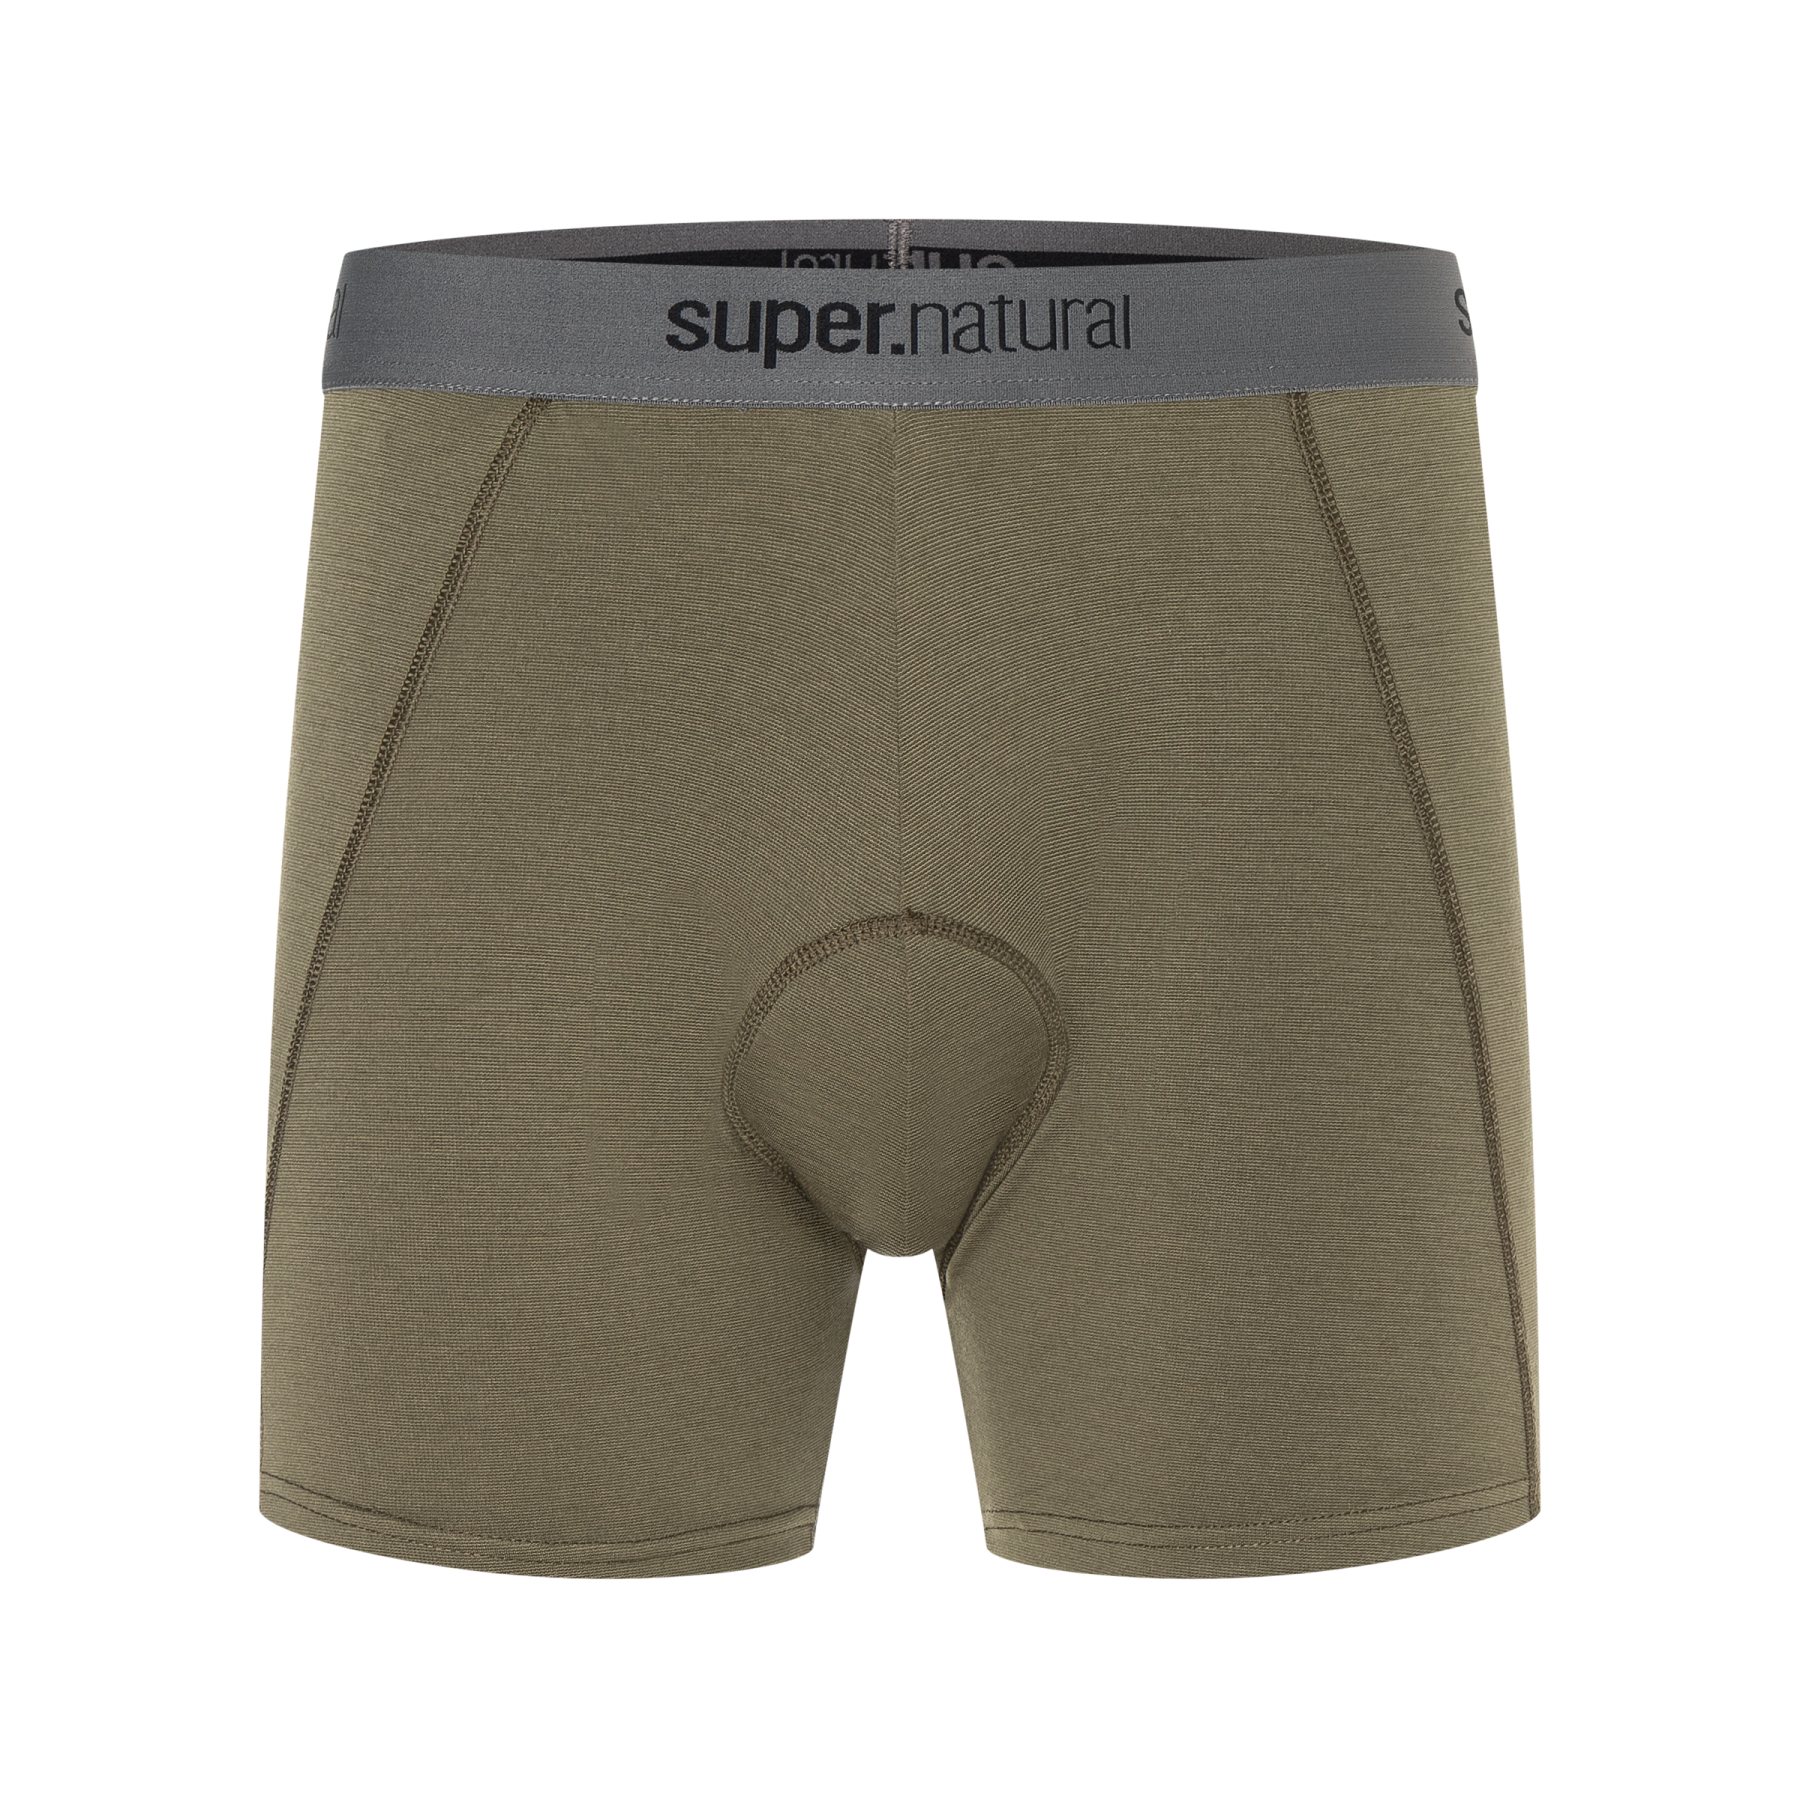 Produktbild von SUPER.NATURAL Gravier Padded Boxershorts - Stone Grey